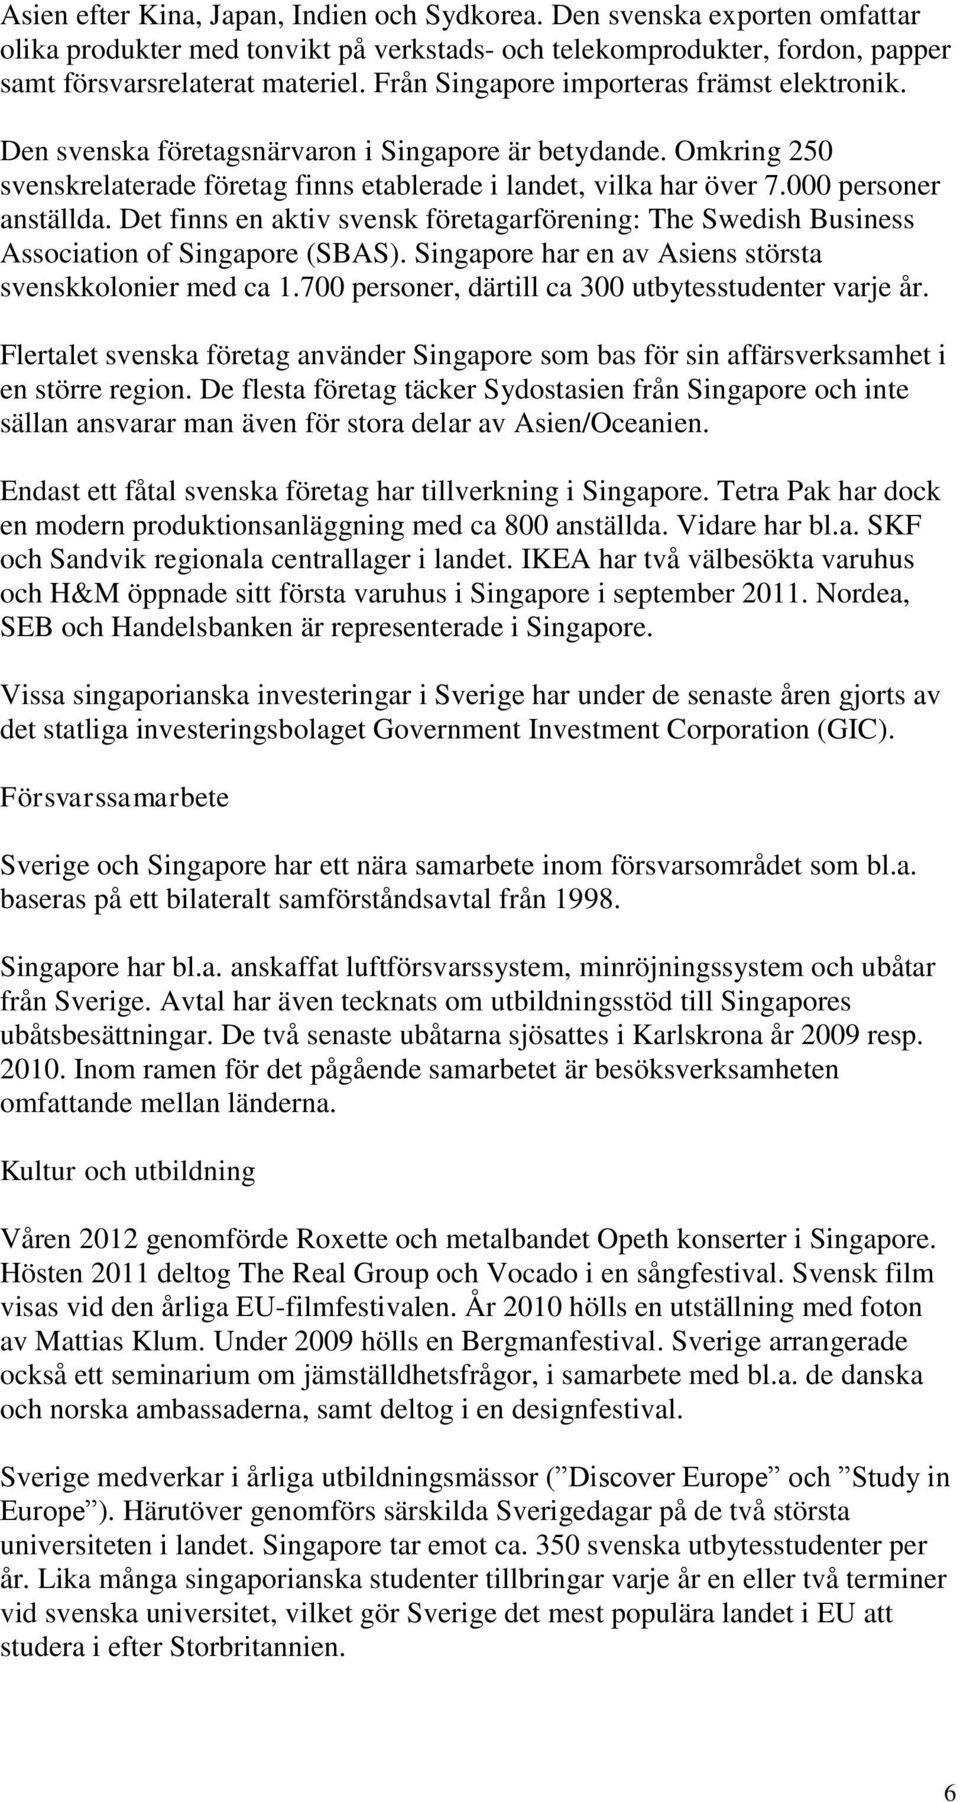 000 personer anställda. Det finns en aktiv svensk företagarförening: The Swedish Business Association of Singapore (SBAS). Singapore har en av Asiens största svenskkolonier med ca 1.